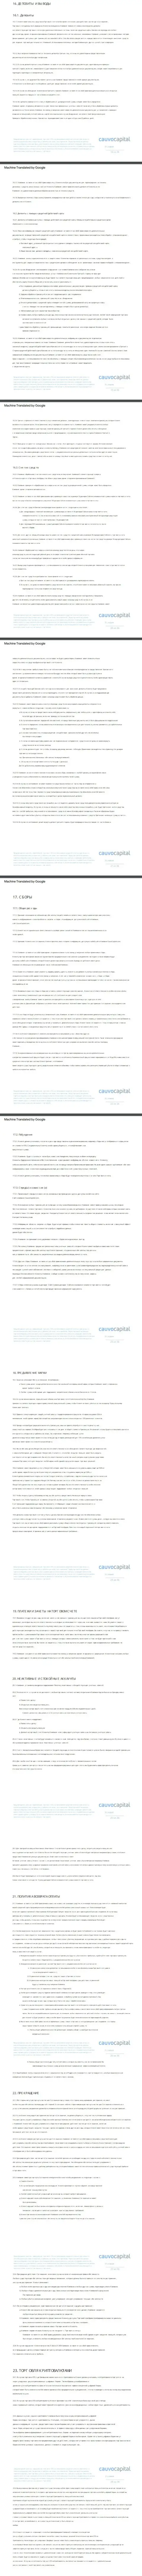 Часть третья клиентского соглашения FOREX-брокера CauvoCapital